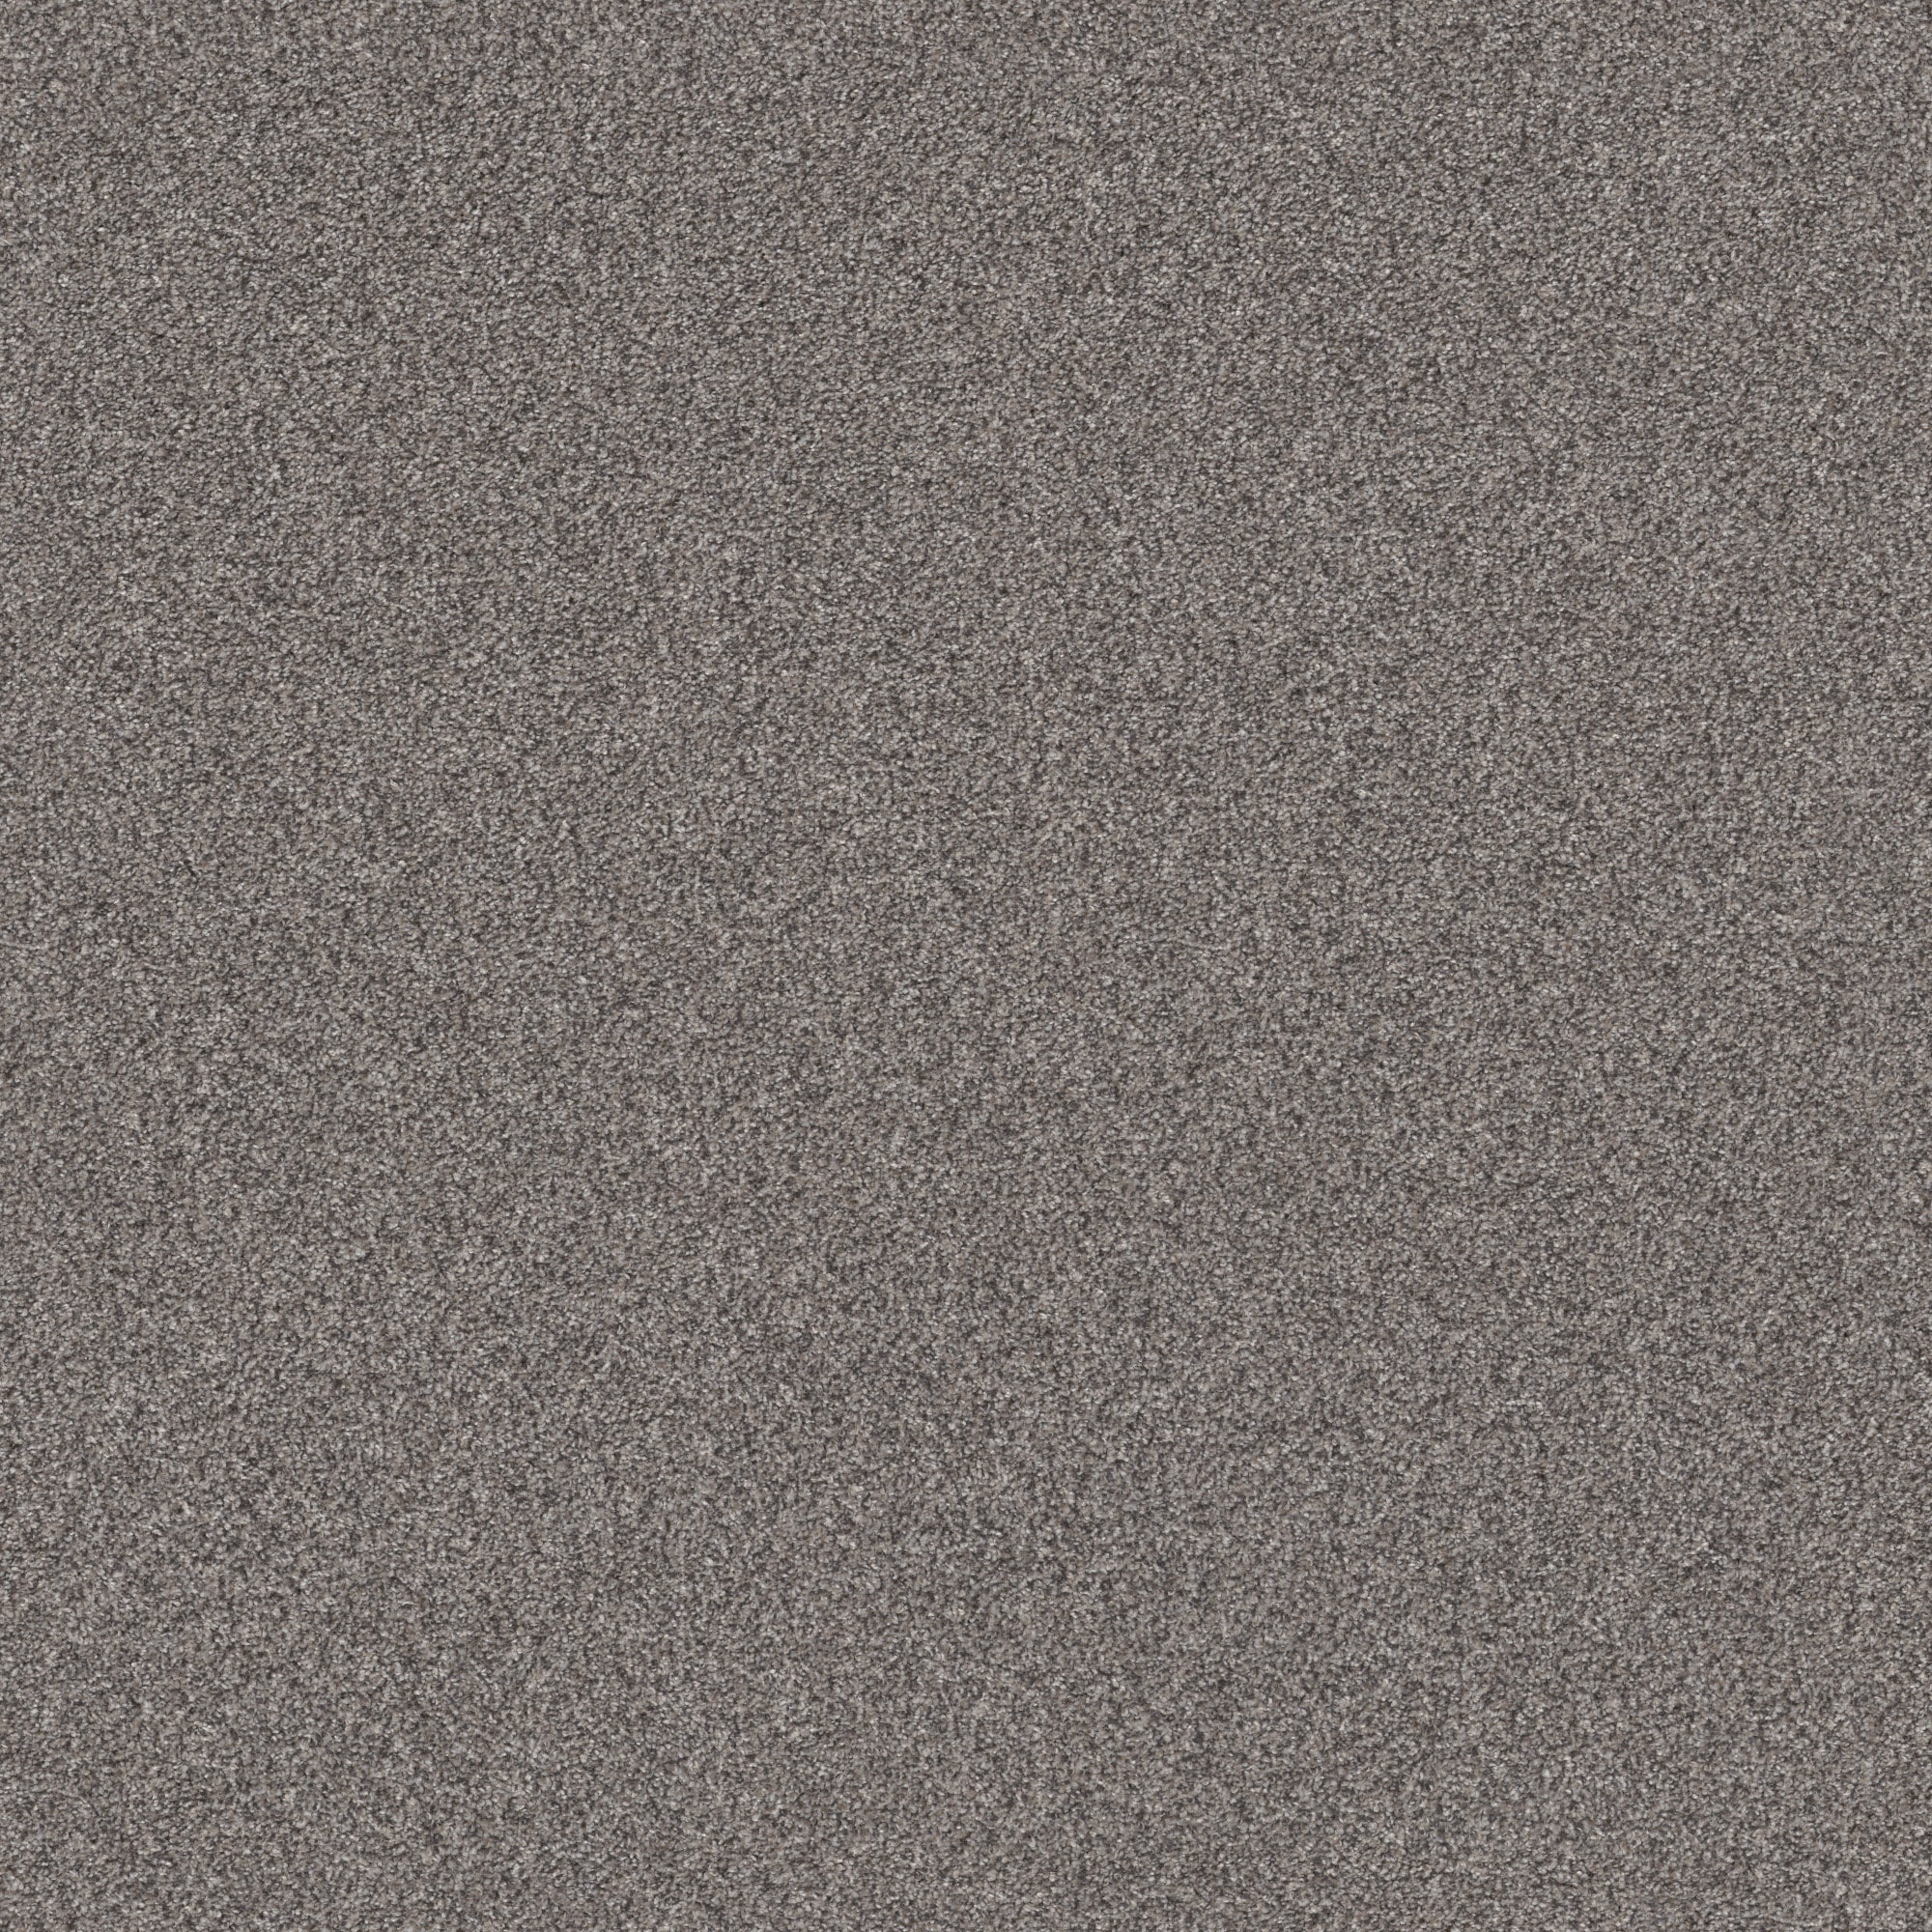 Platinum Textured Carpet